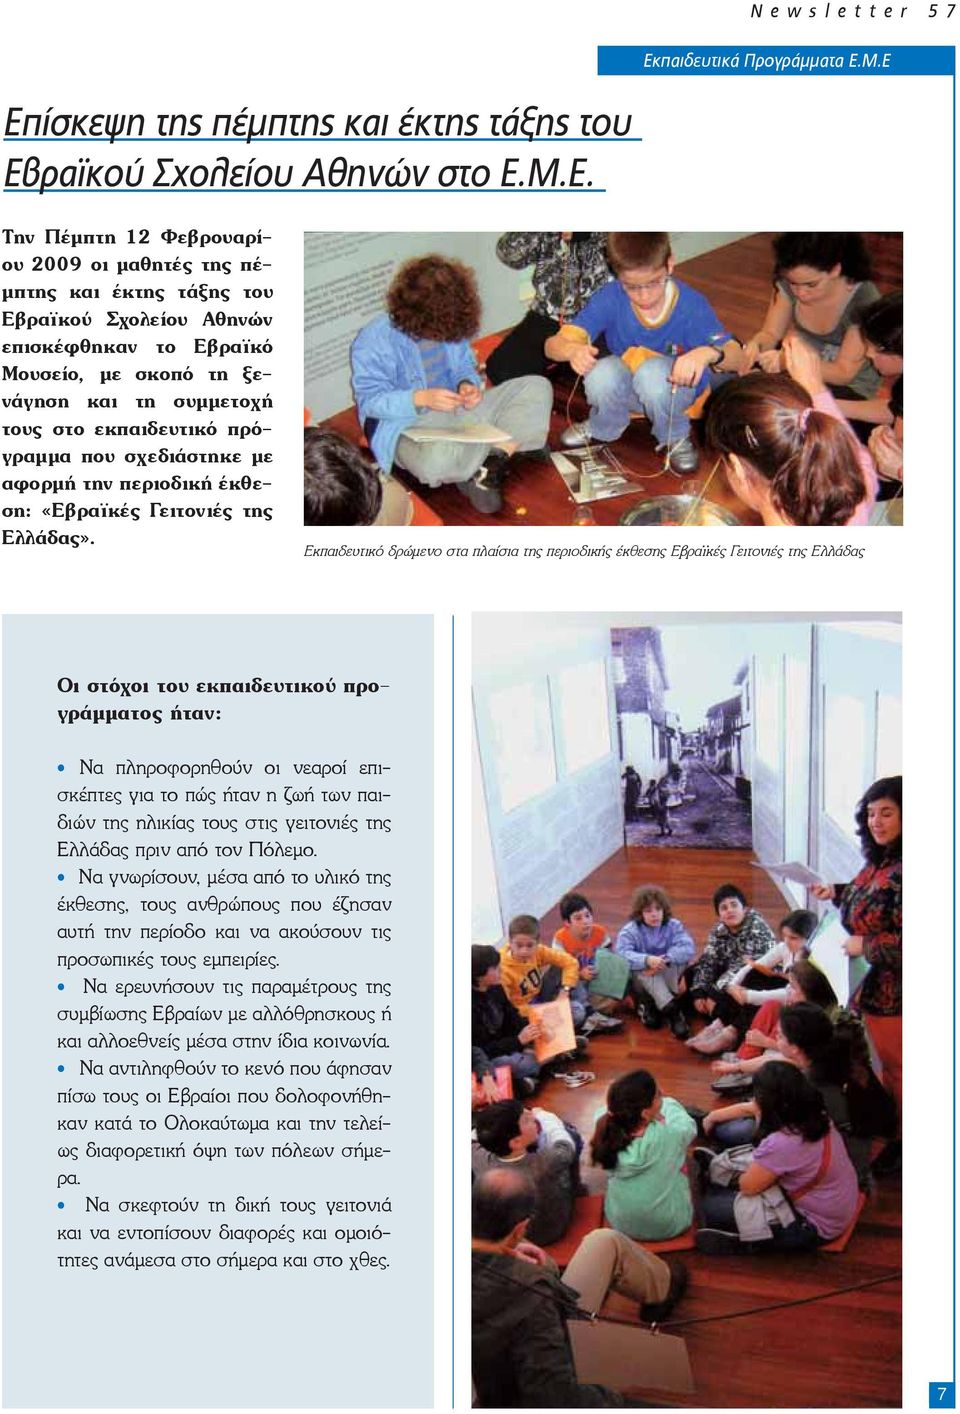 Εκπαιδευτικό δρώμενο στα πλαίσια της περιοδικής έκθεσης Εβραϊκές Γειτονιές της Ελλάδας Οι στόχοι του εκπαιδευτικού προγράμματος ήταν: Να πληροφορηθούν οι νεαροί επισκέπτες για το πώς ήταν η ζωή των